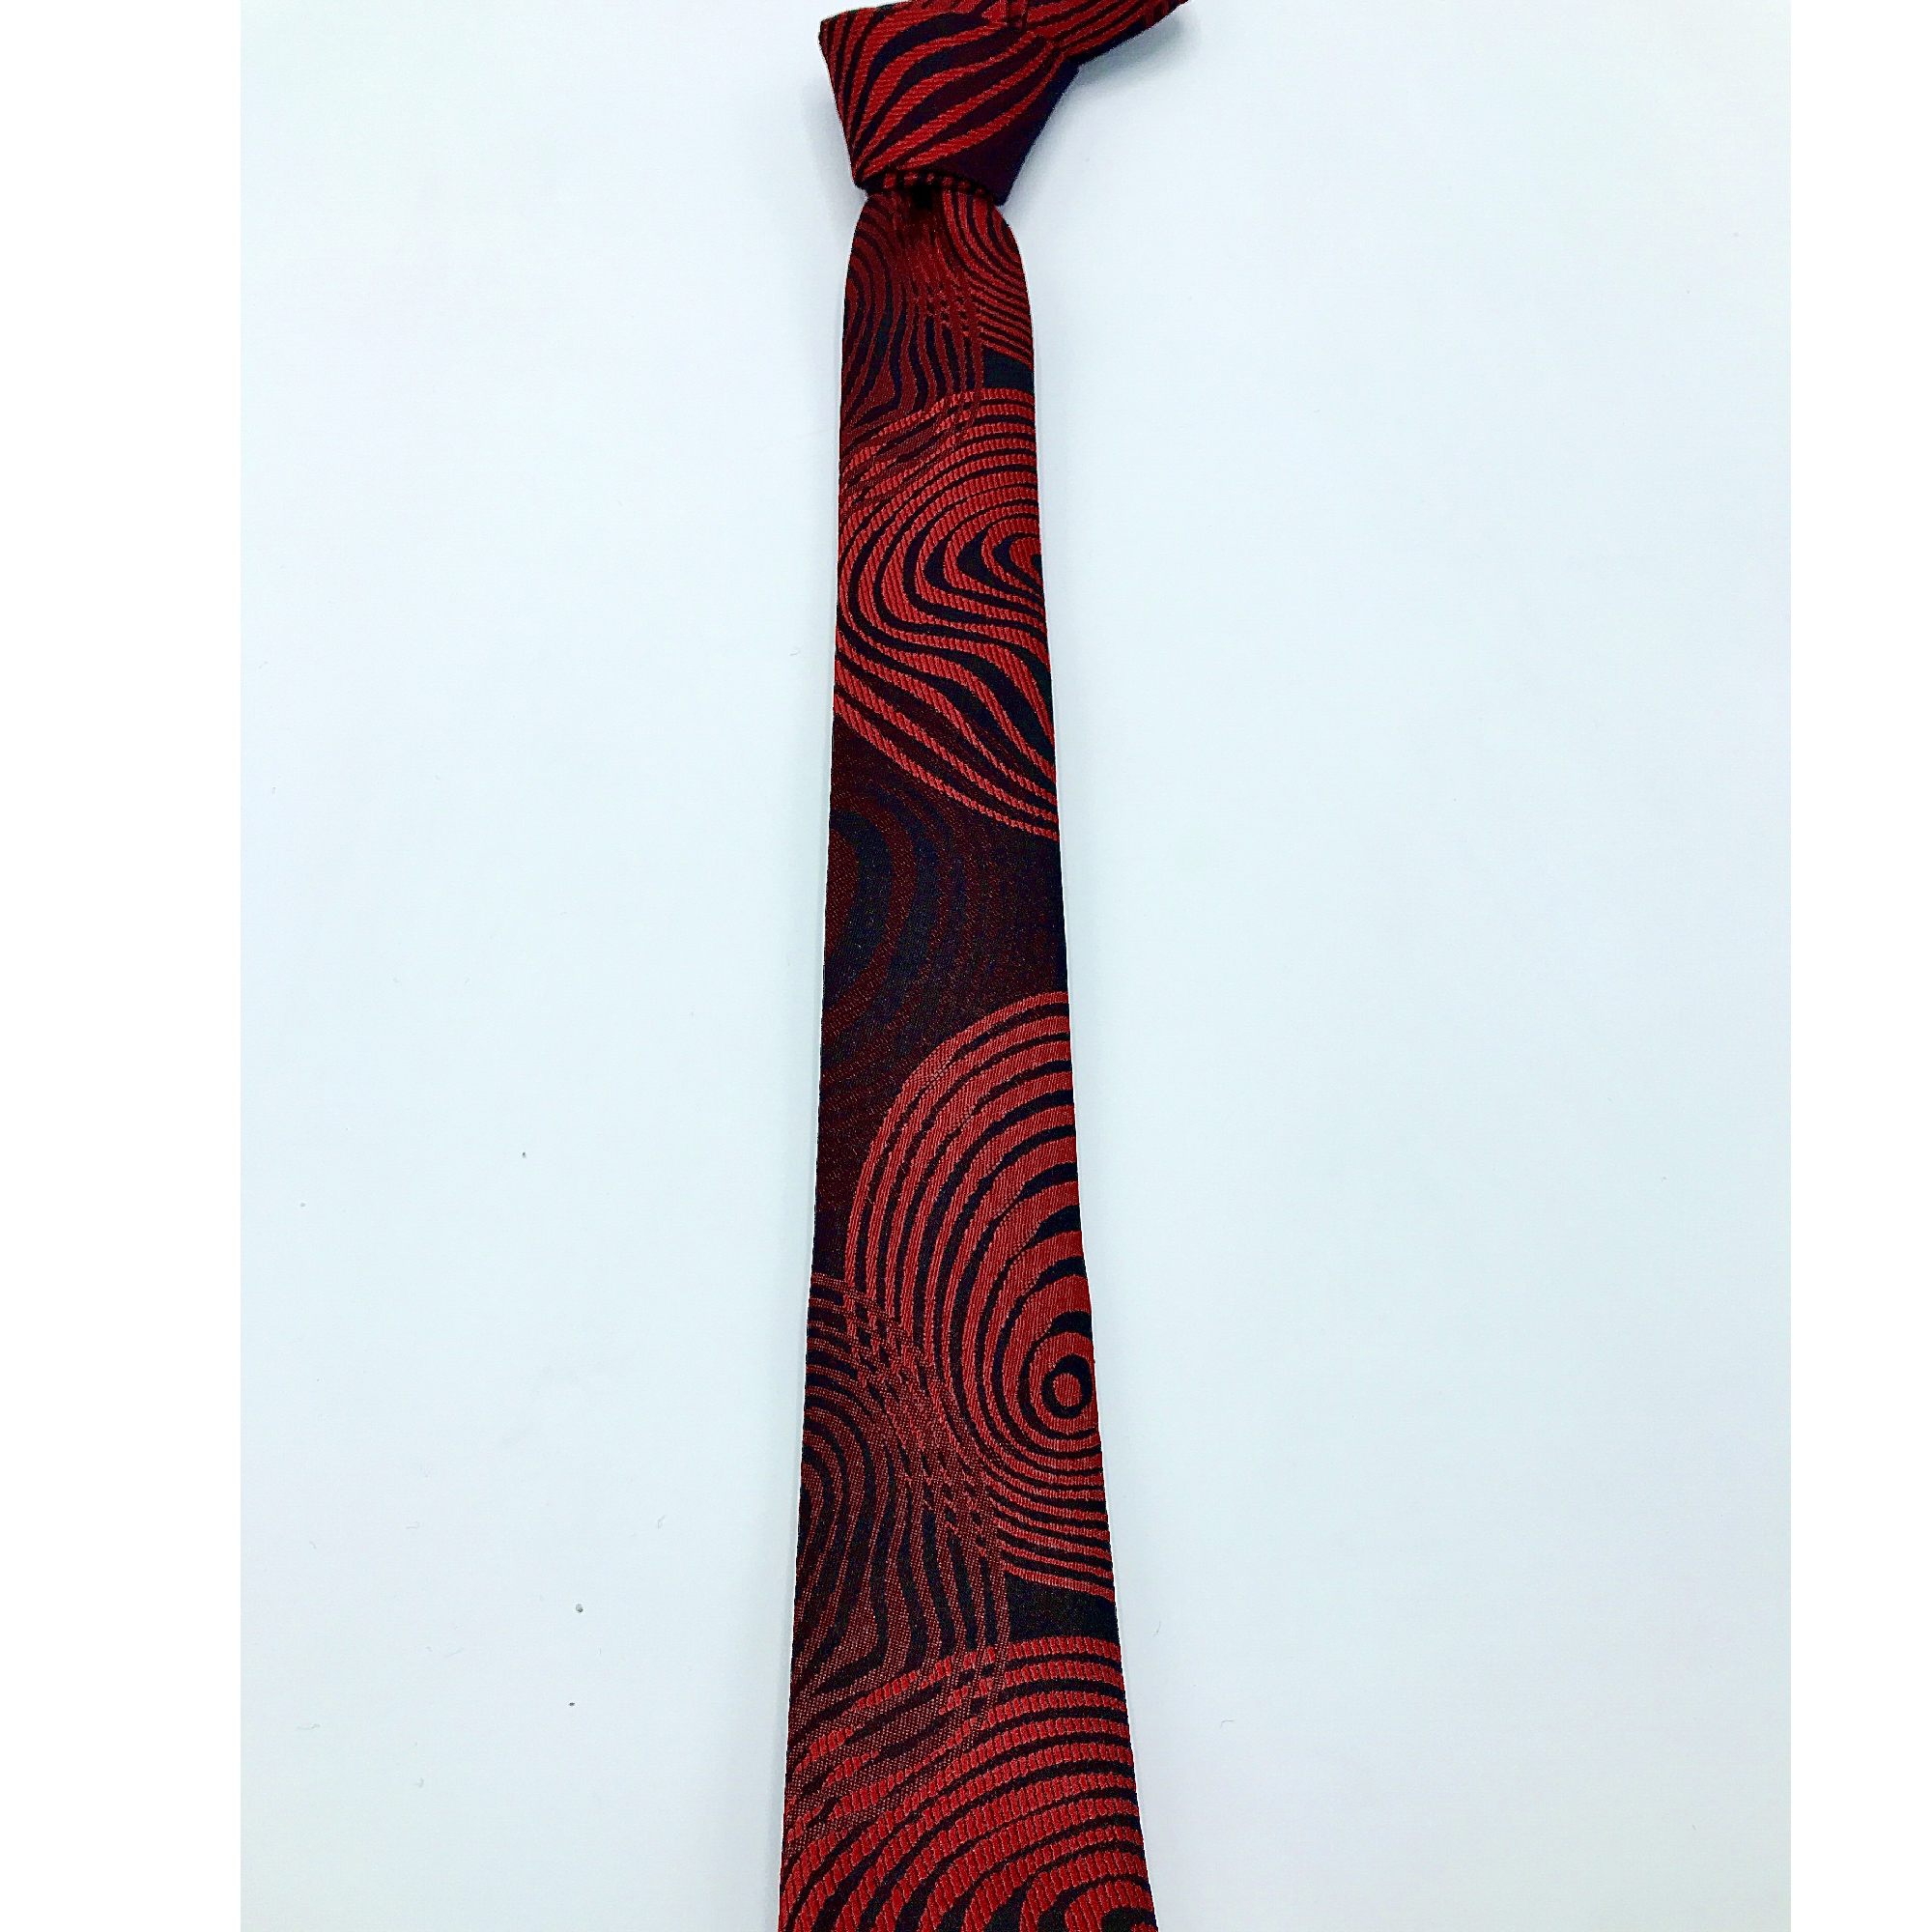  کراوات مردانه هکس ایران مدل KT-RD DYR -  - 3